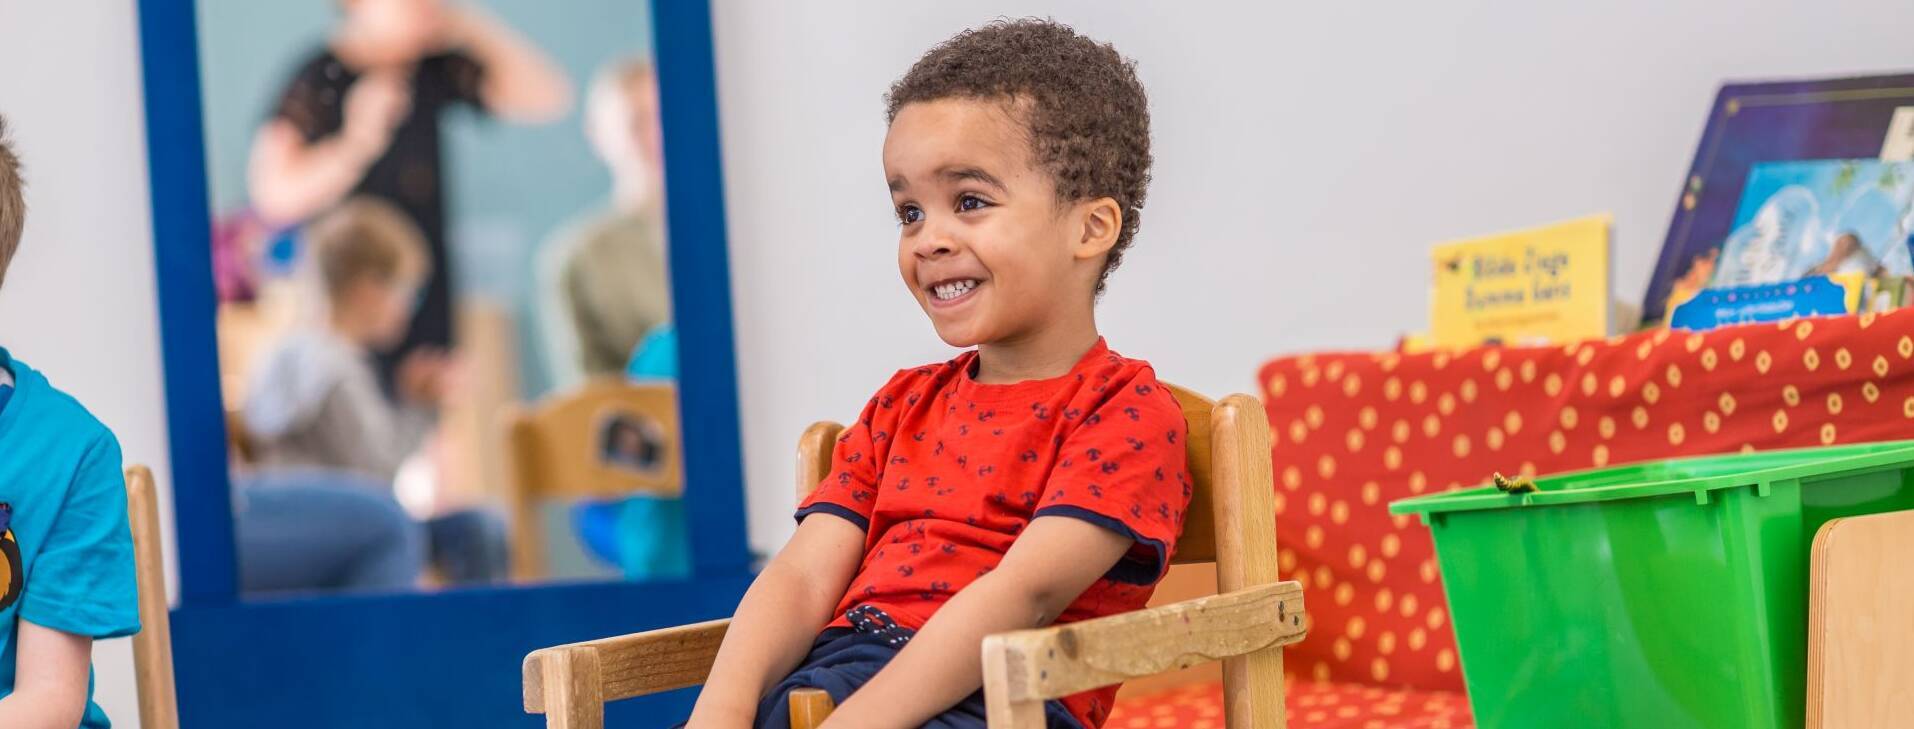 Ein Kind grinst sehr fröhlich auf ein einem Holzstuhl.